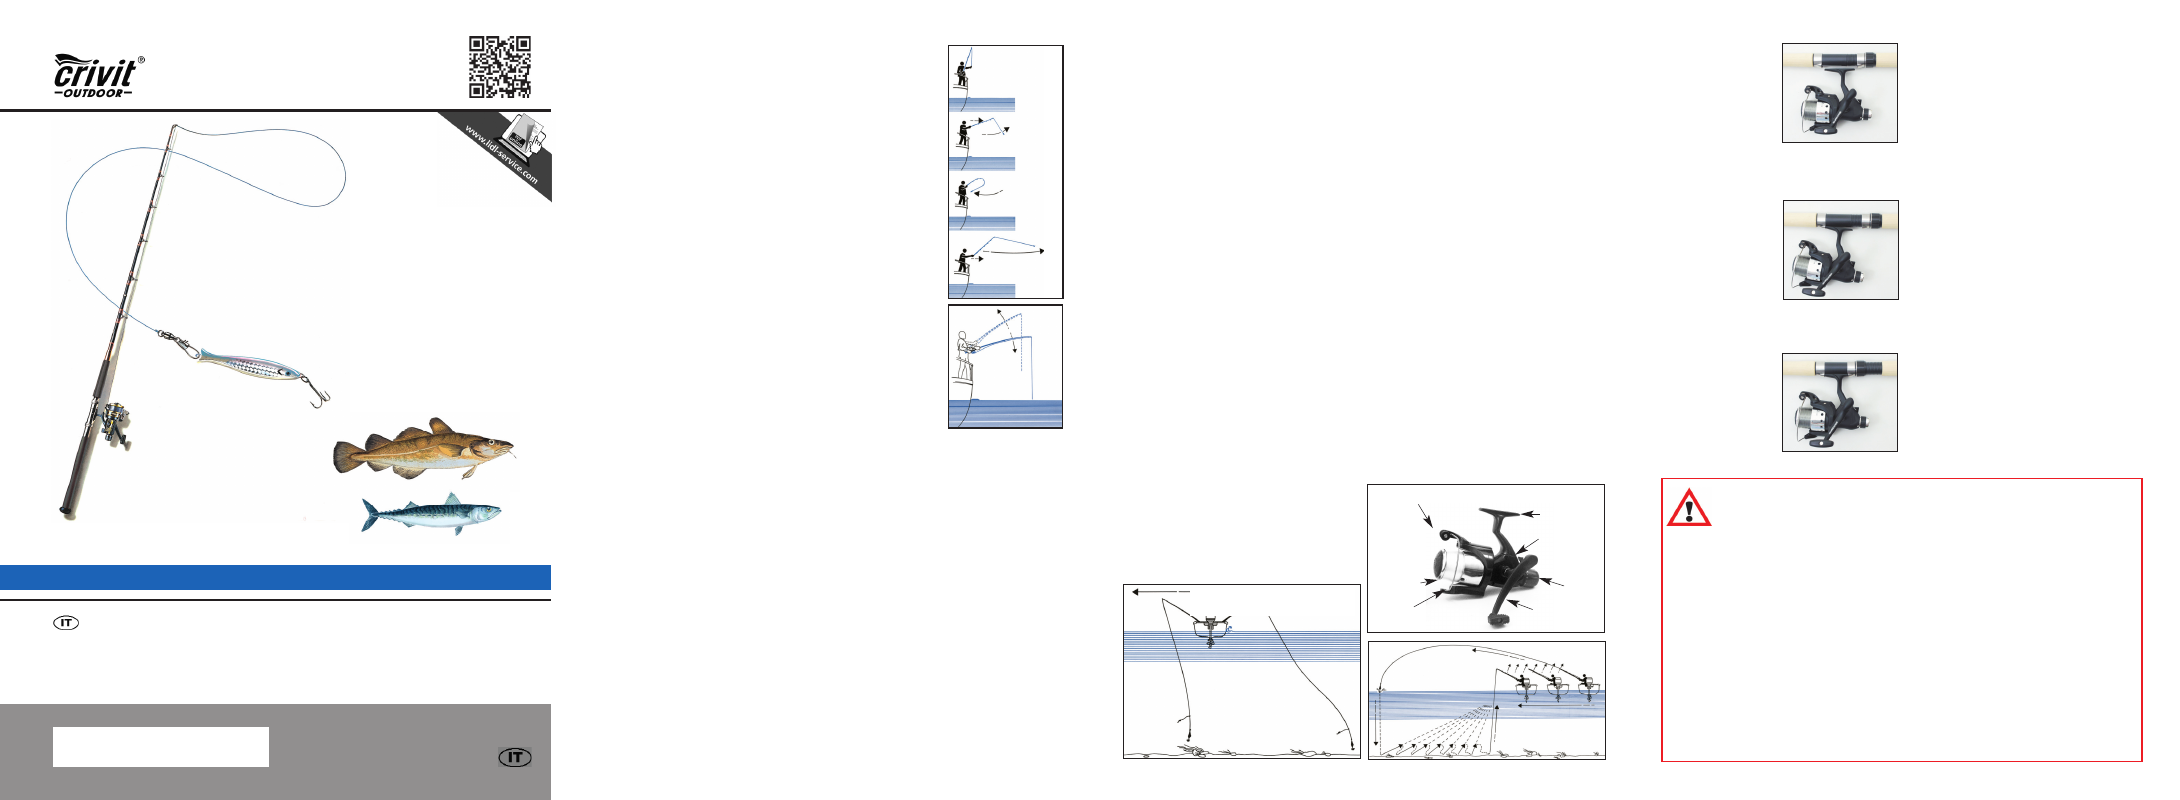 Mi-pilk-2014-it.pdf, Set completo da pesca 220-2 | Crivit 220-2 User Manual  | Page 9 / 16